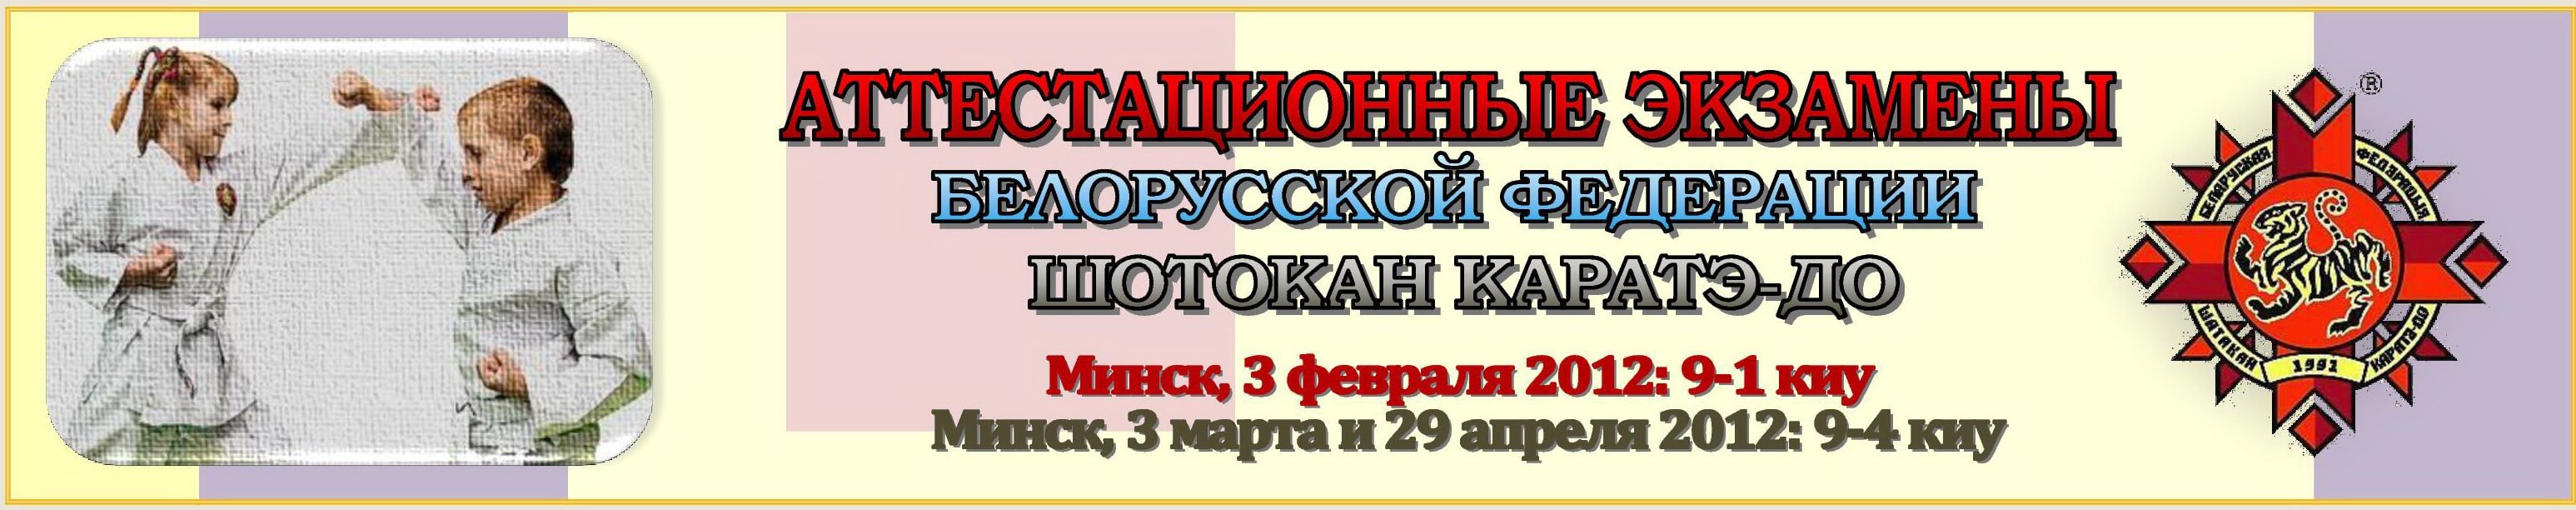 Аттестация БФШК 2012 02-04 Баннер